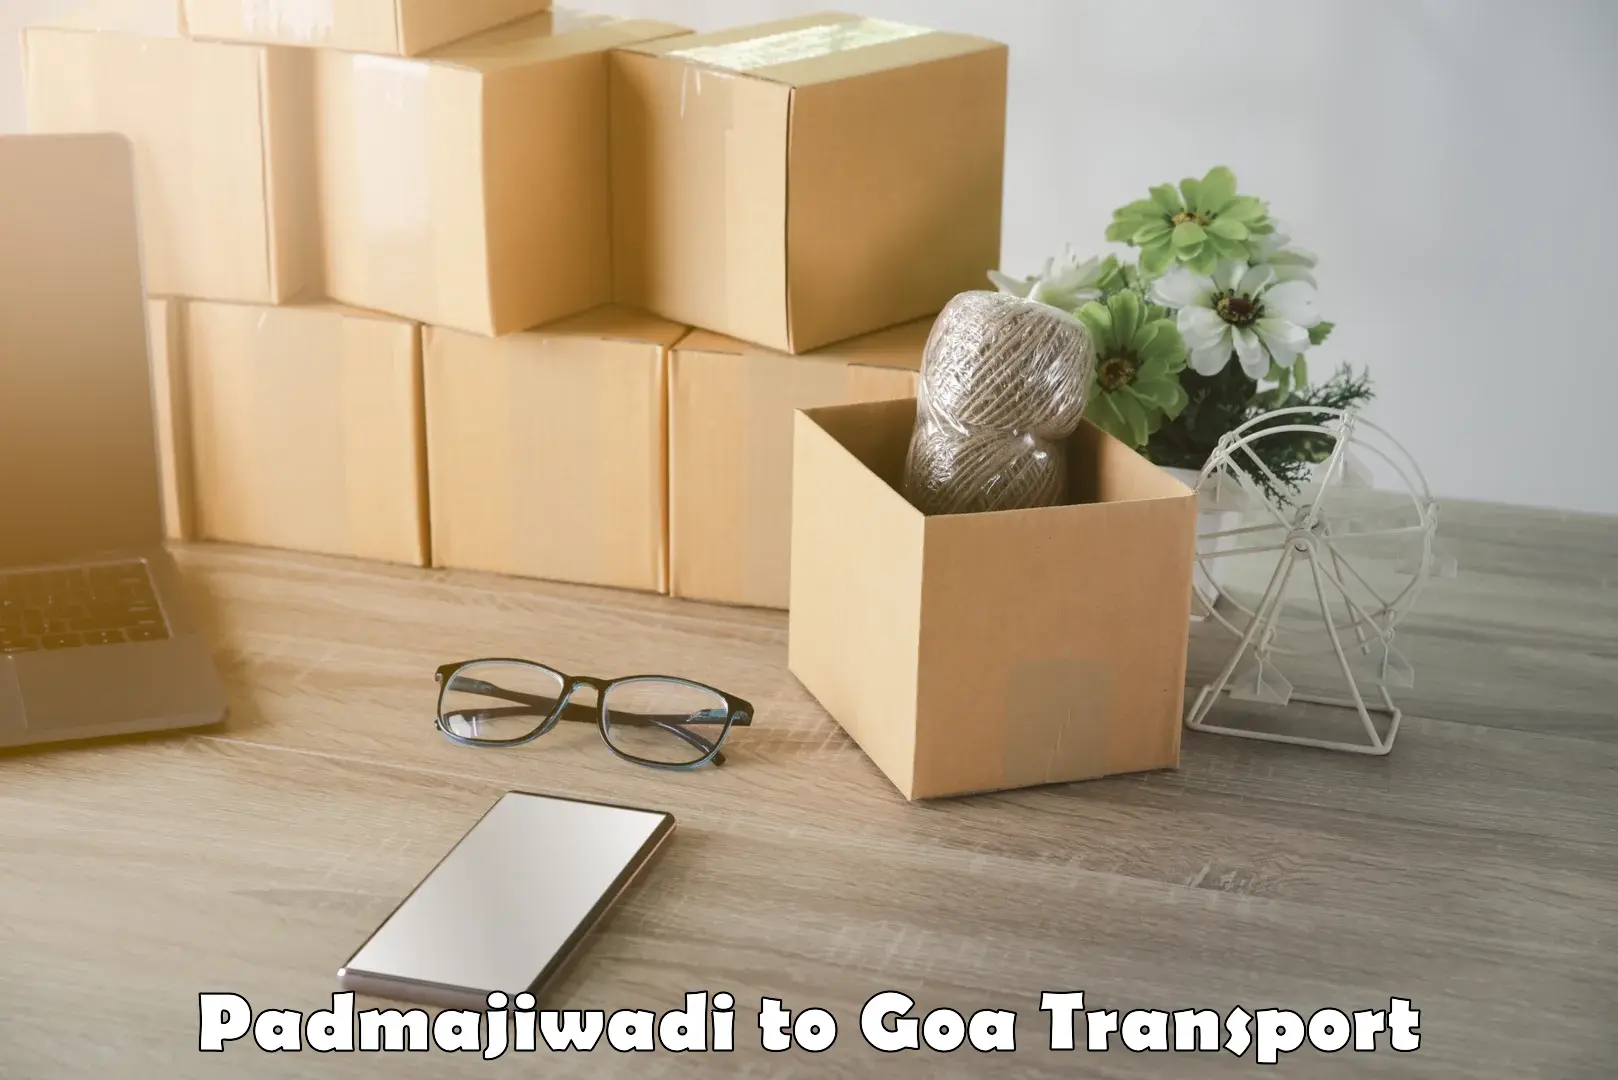 Two wheeler parcel service Padmajiwadi to NIT Goa